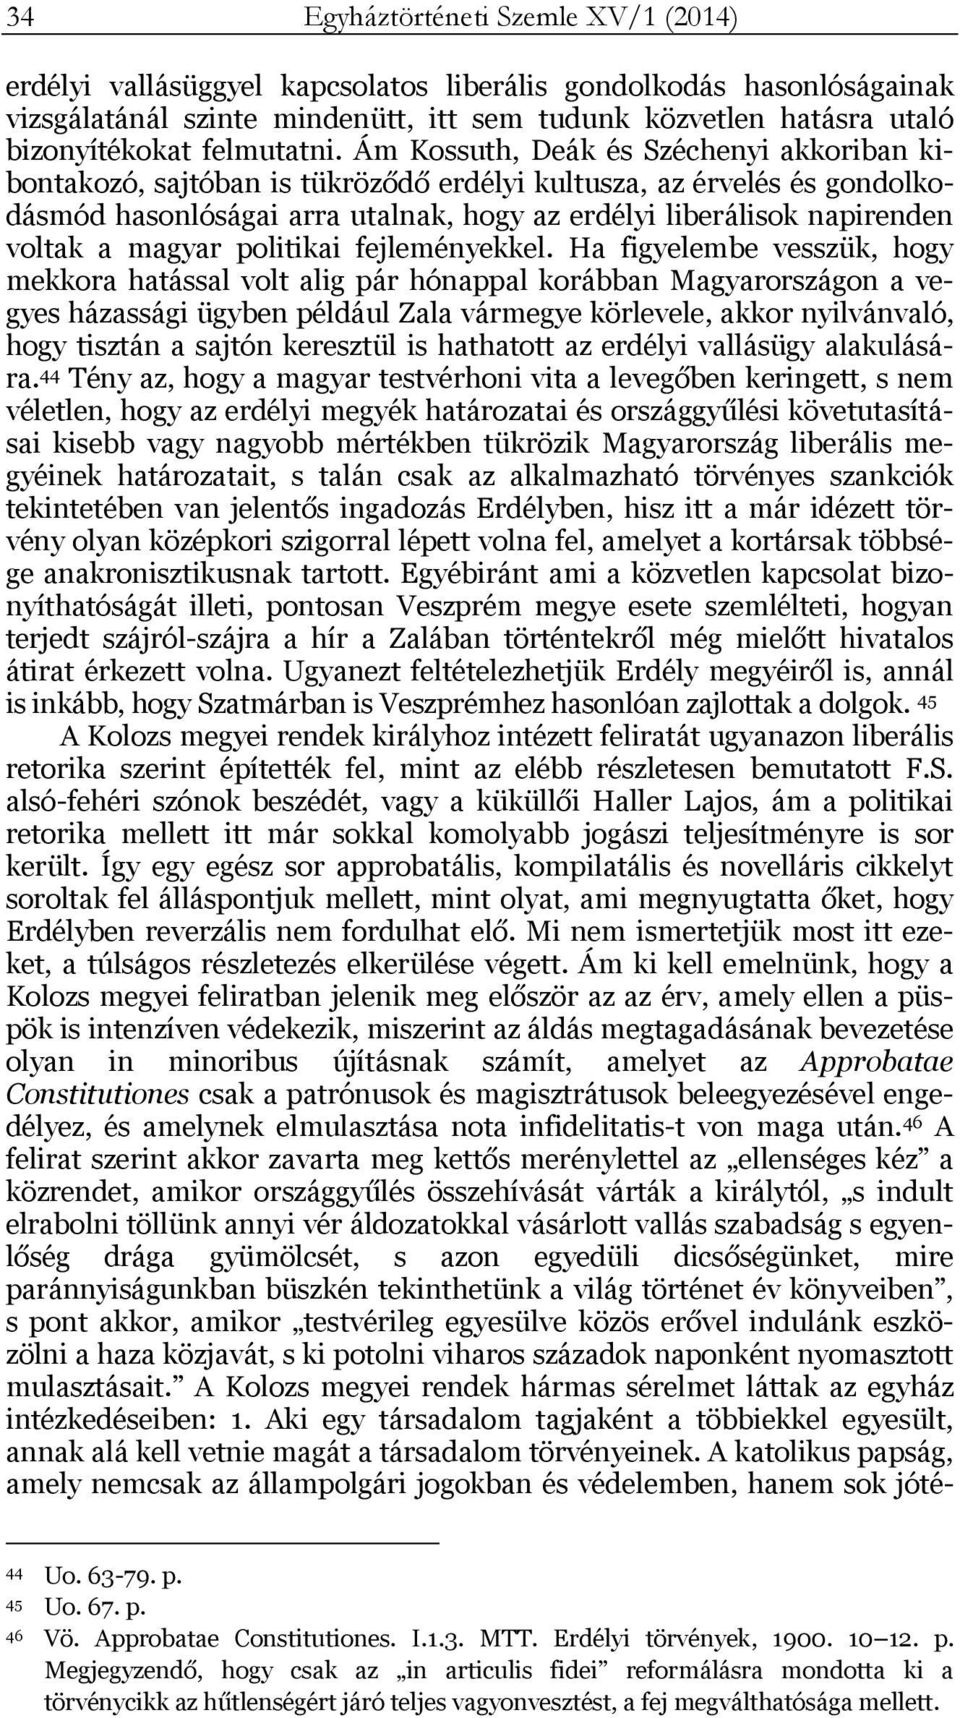 Ám Kossuth, Deák és Széchenyi akkoriban kibontakozó, sajtóban is tükröződő erdélyi kultusza, az érvelés és gondolkodásmód hasonlóságai arra utalnak, hogy az erdélyi liberálisok napirenden voltak a